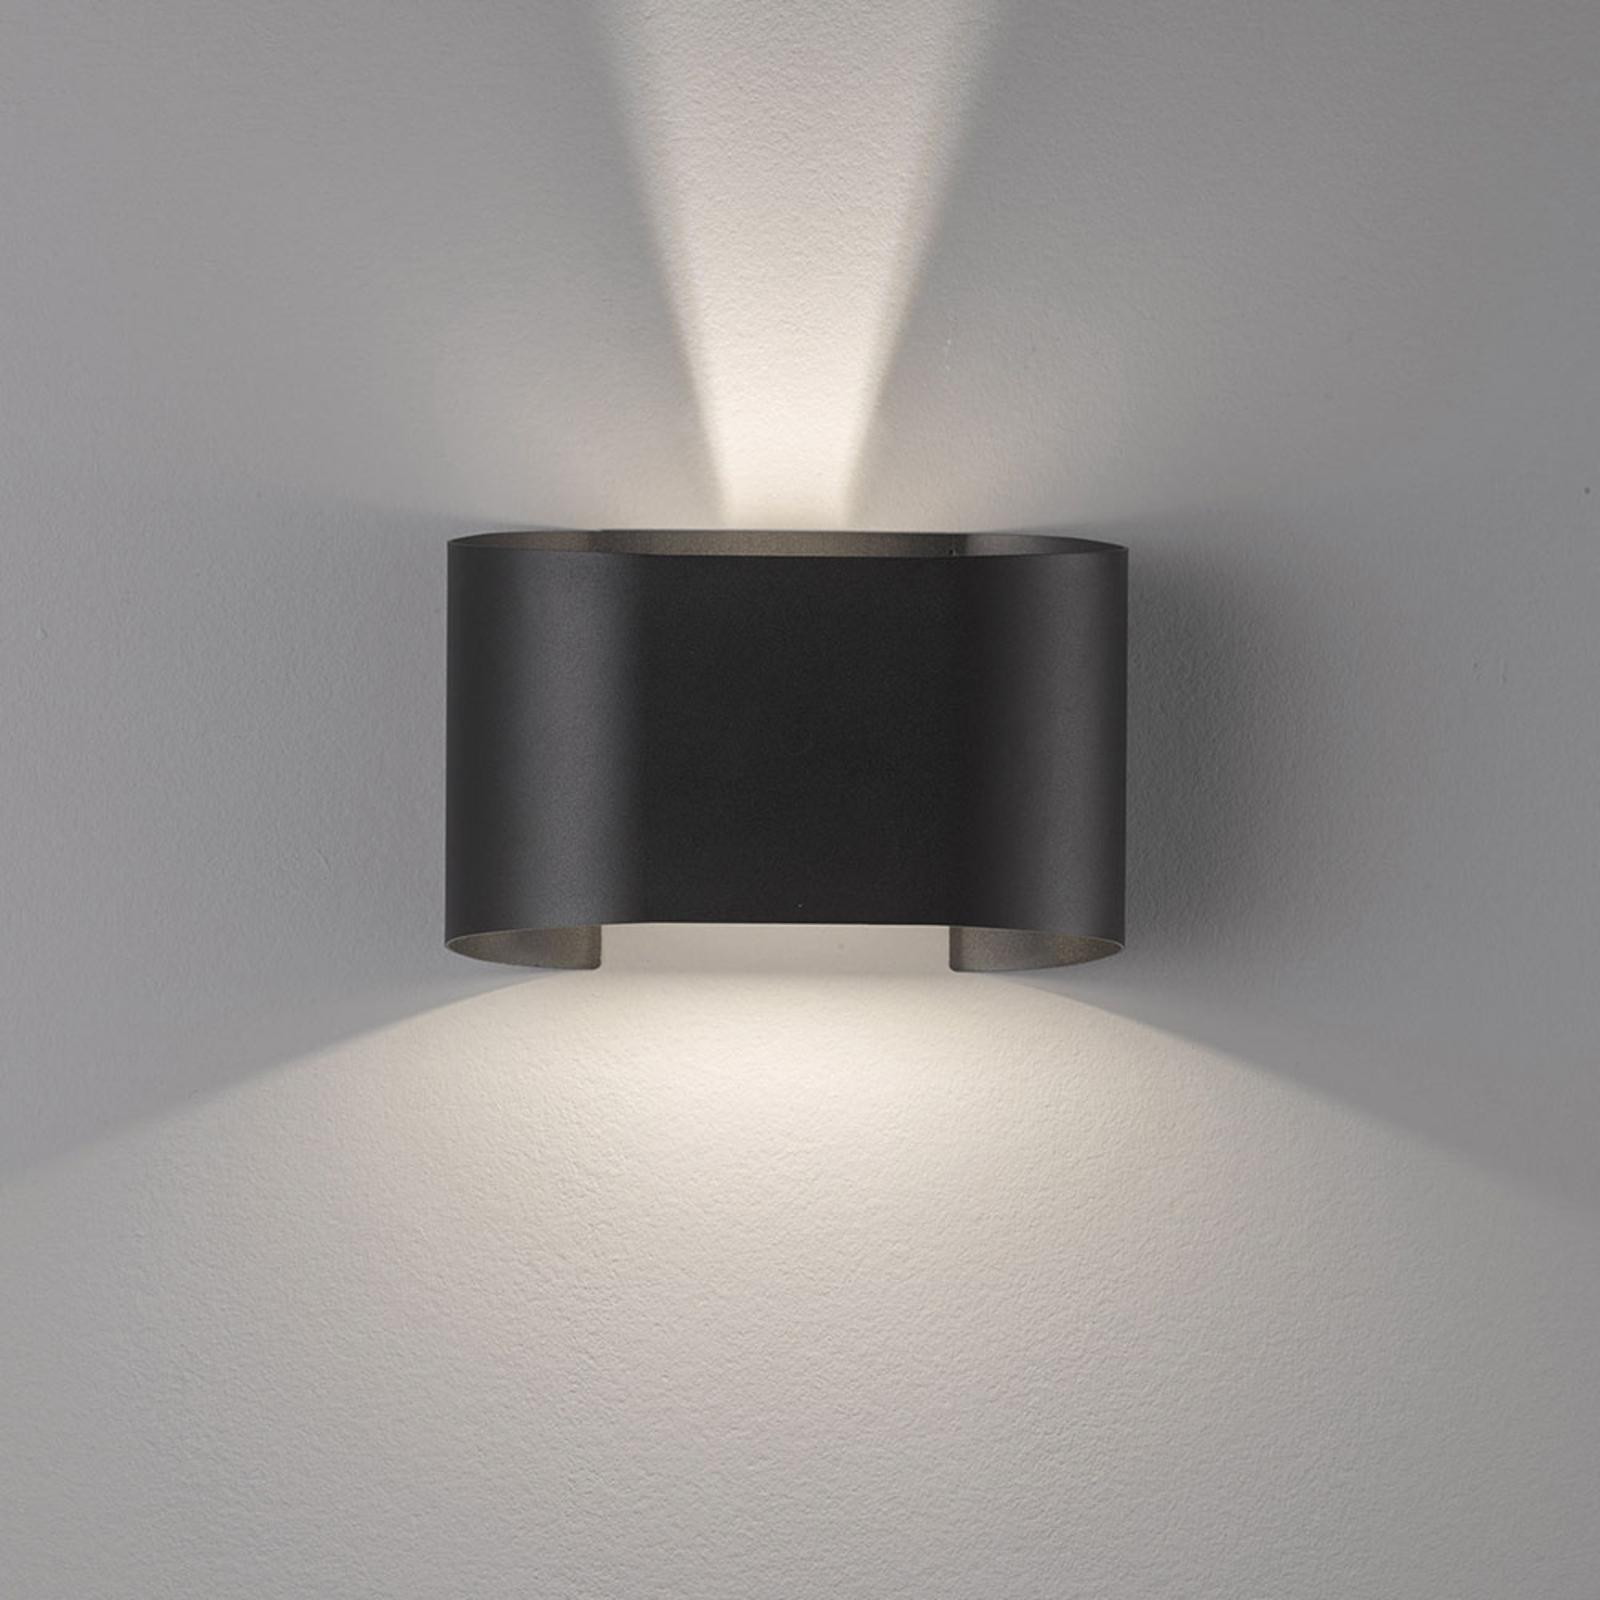 LED-Wandleuchte Wall, zweiflammig, rund, schwarz